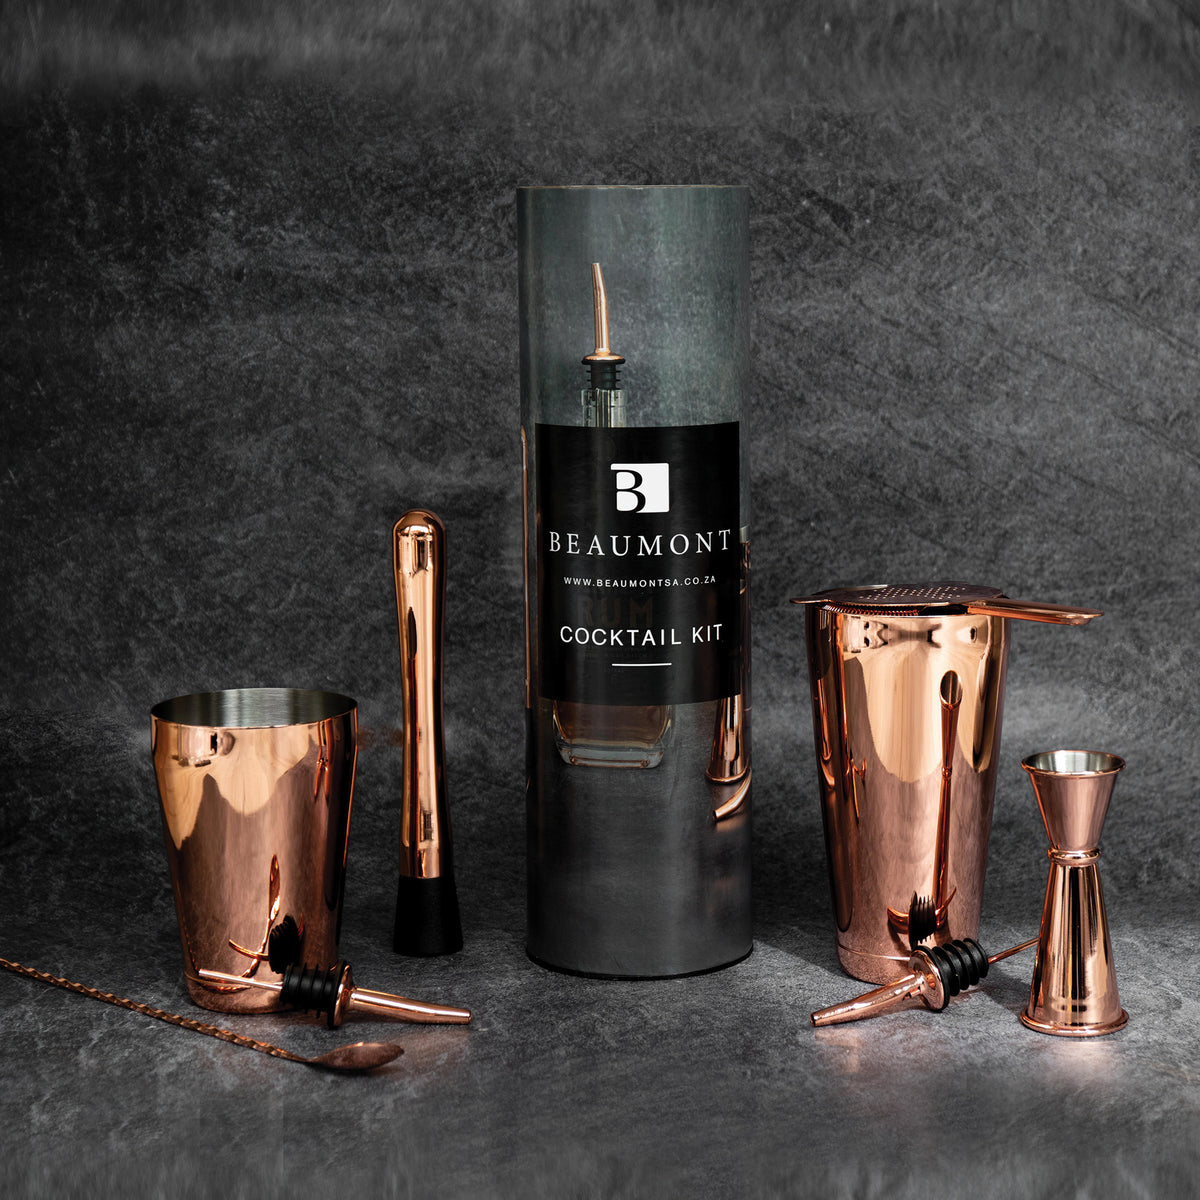 Copper Cocktail Kit - 8 Pieces - Beaumont SA